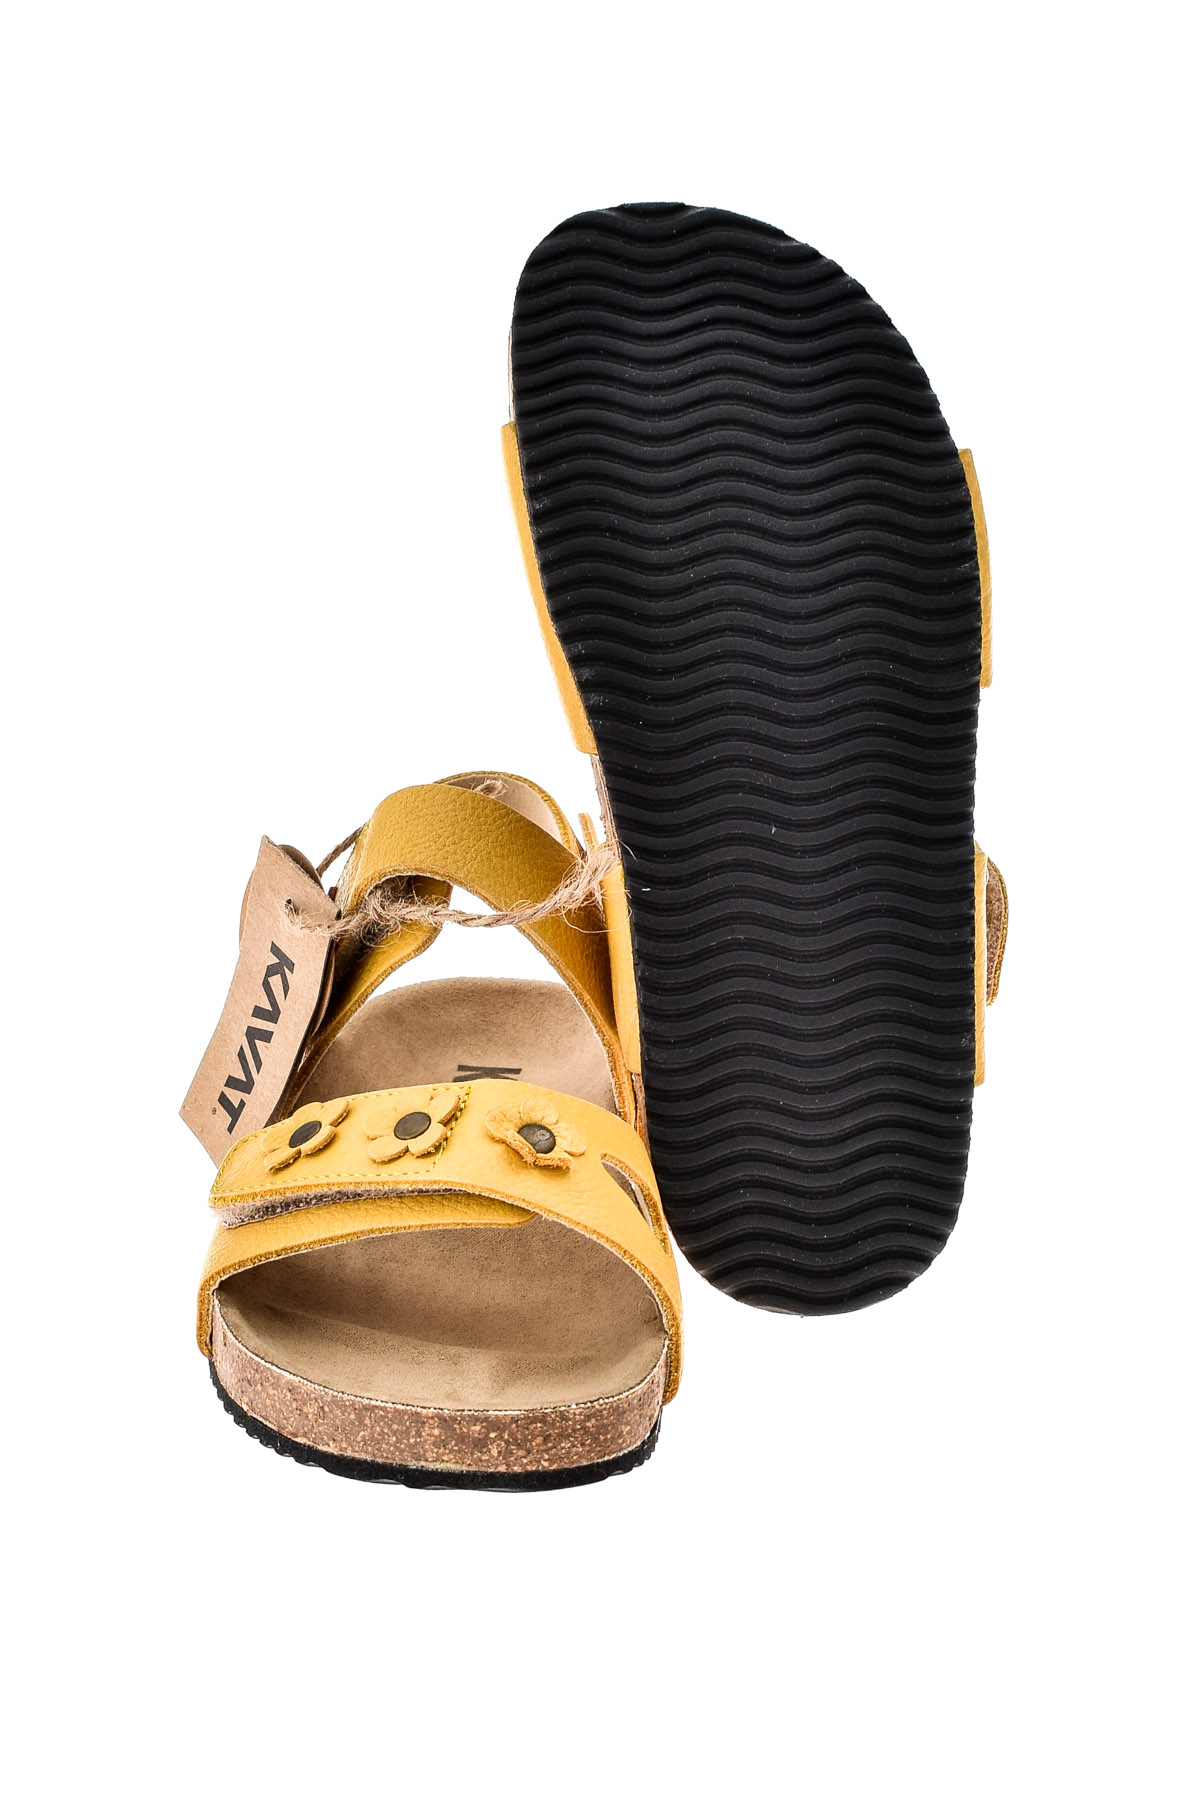 Sandals for girls - KAVAT - 3